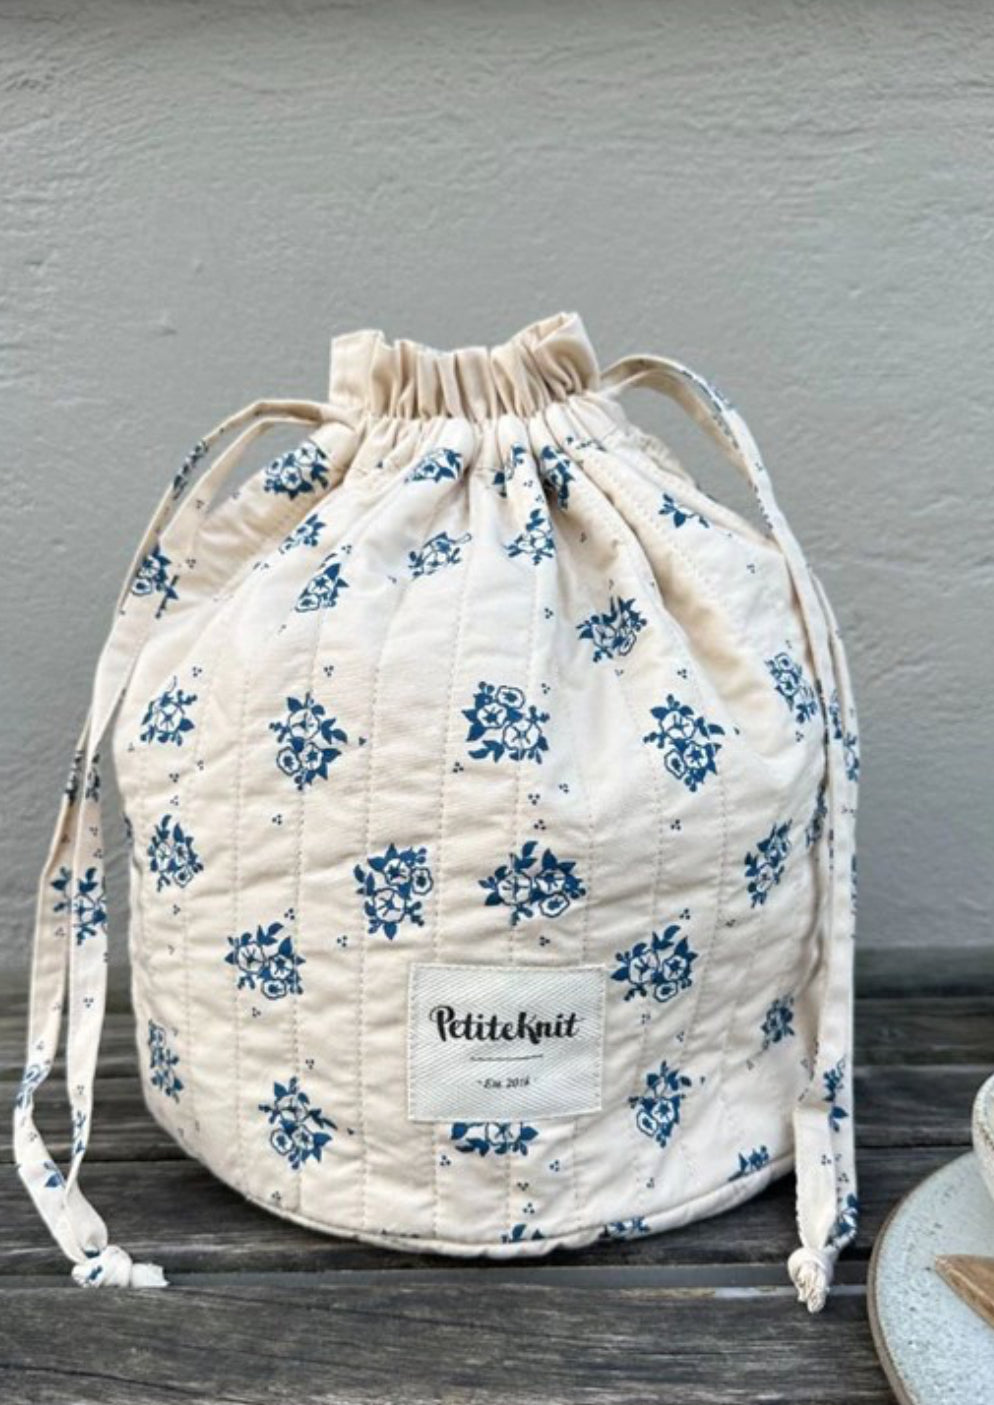 PetiteKnit Get Your Knit together bag